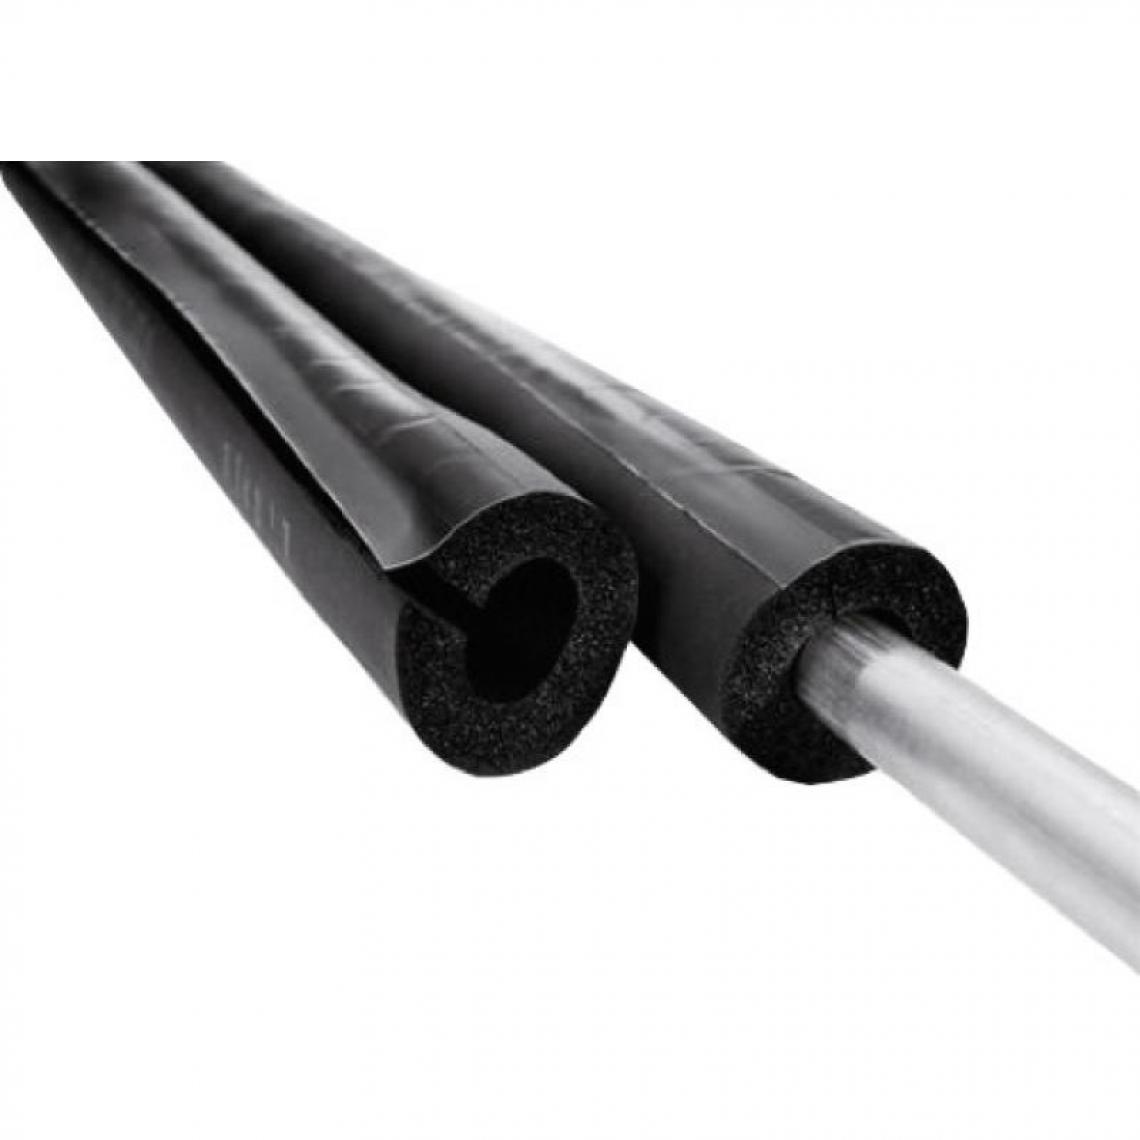 NMC - Manchon isolant fendu M1, épaisseur 13 mm, longueur 2 m, pour tuyaux diamètre 42 - Coudes et raccords PVC